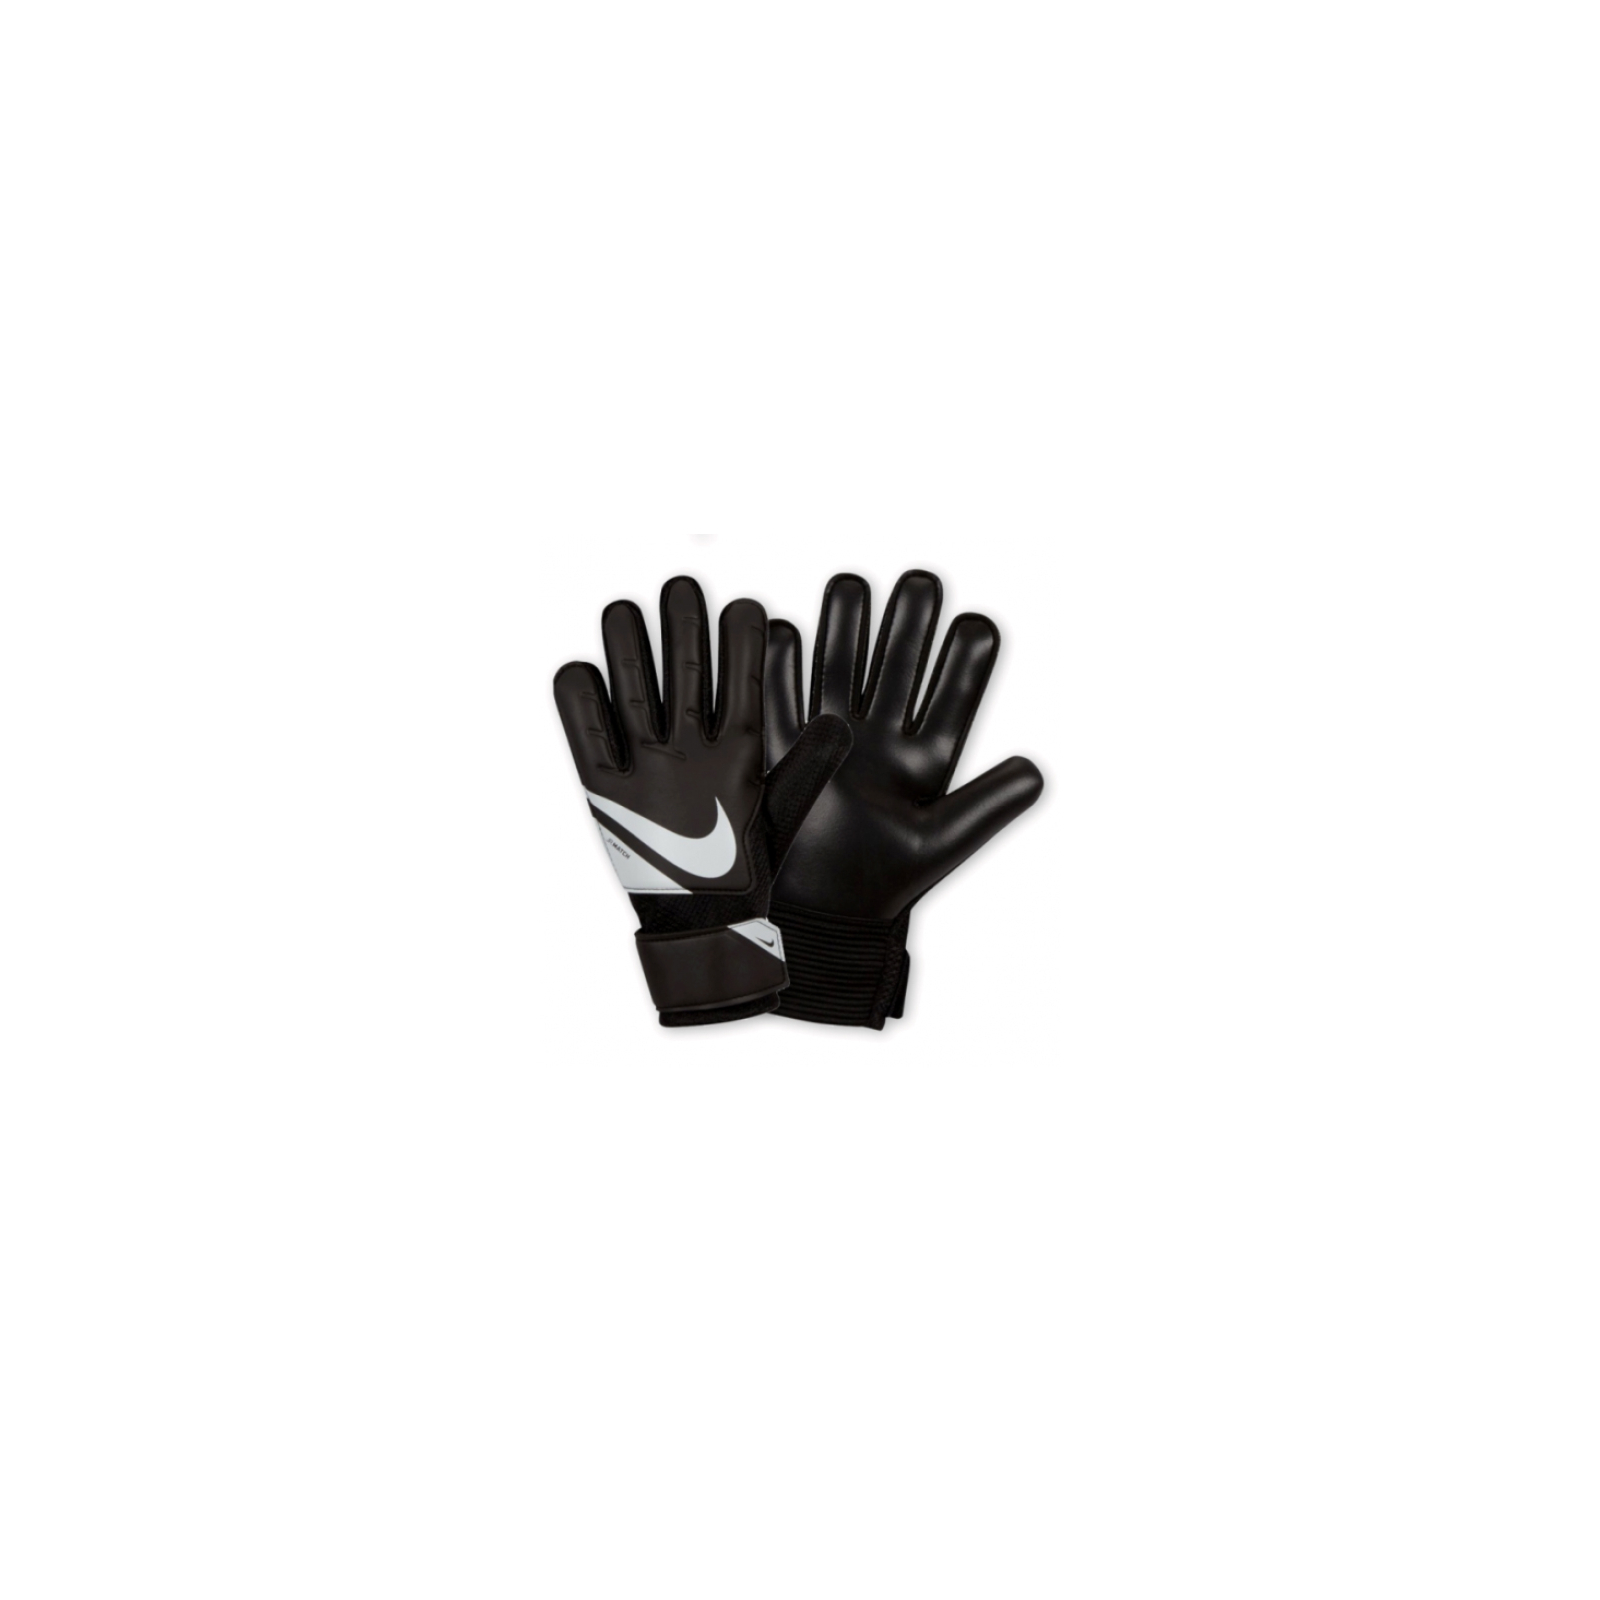 Вратарские перчатки Nike NK GK Match JR - HO23 FJ4864-011 чорний, білий Діт 7 (196968940752)